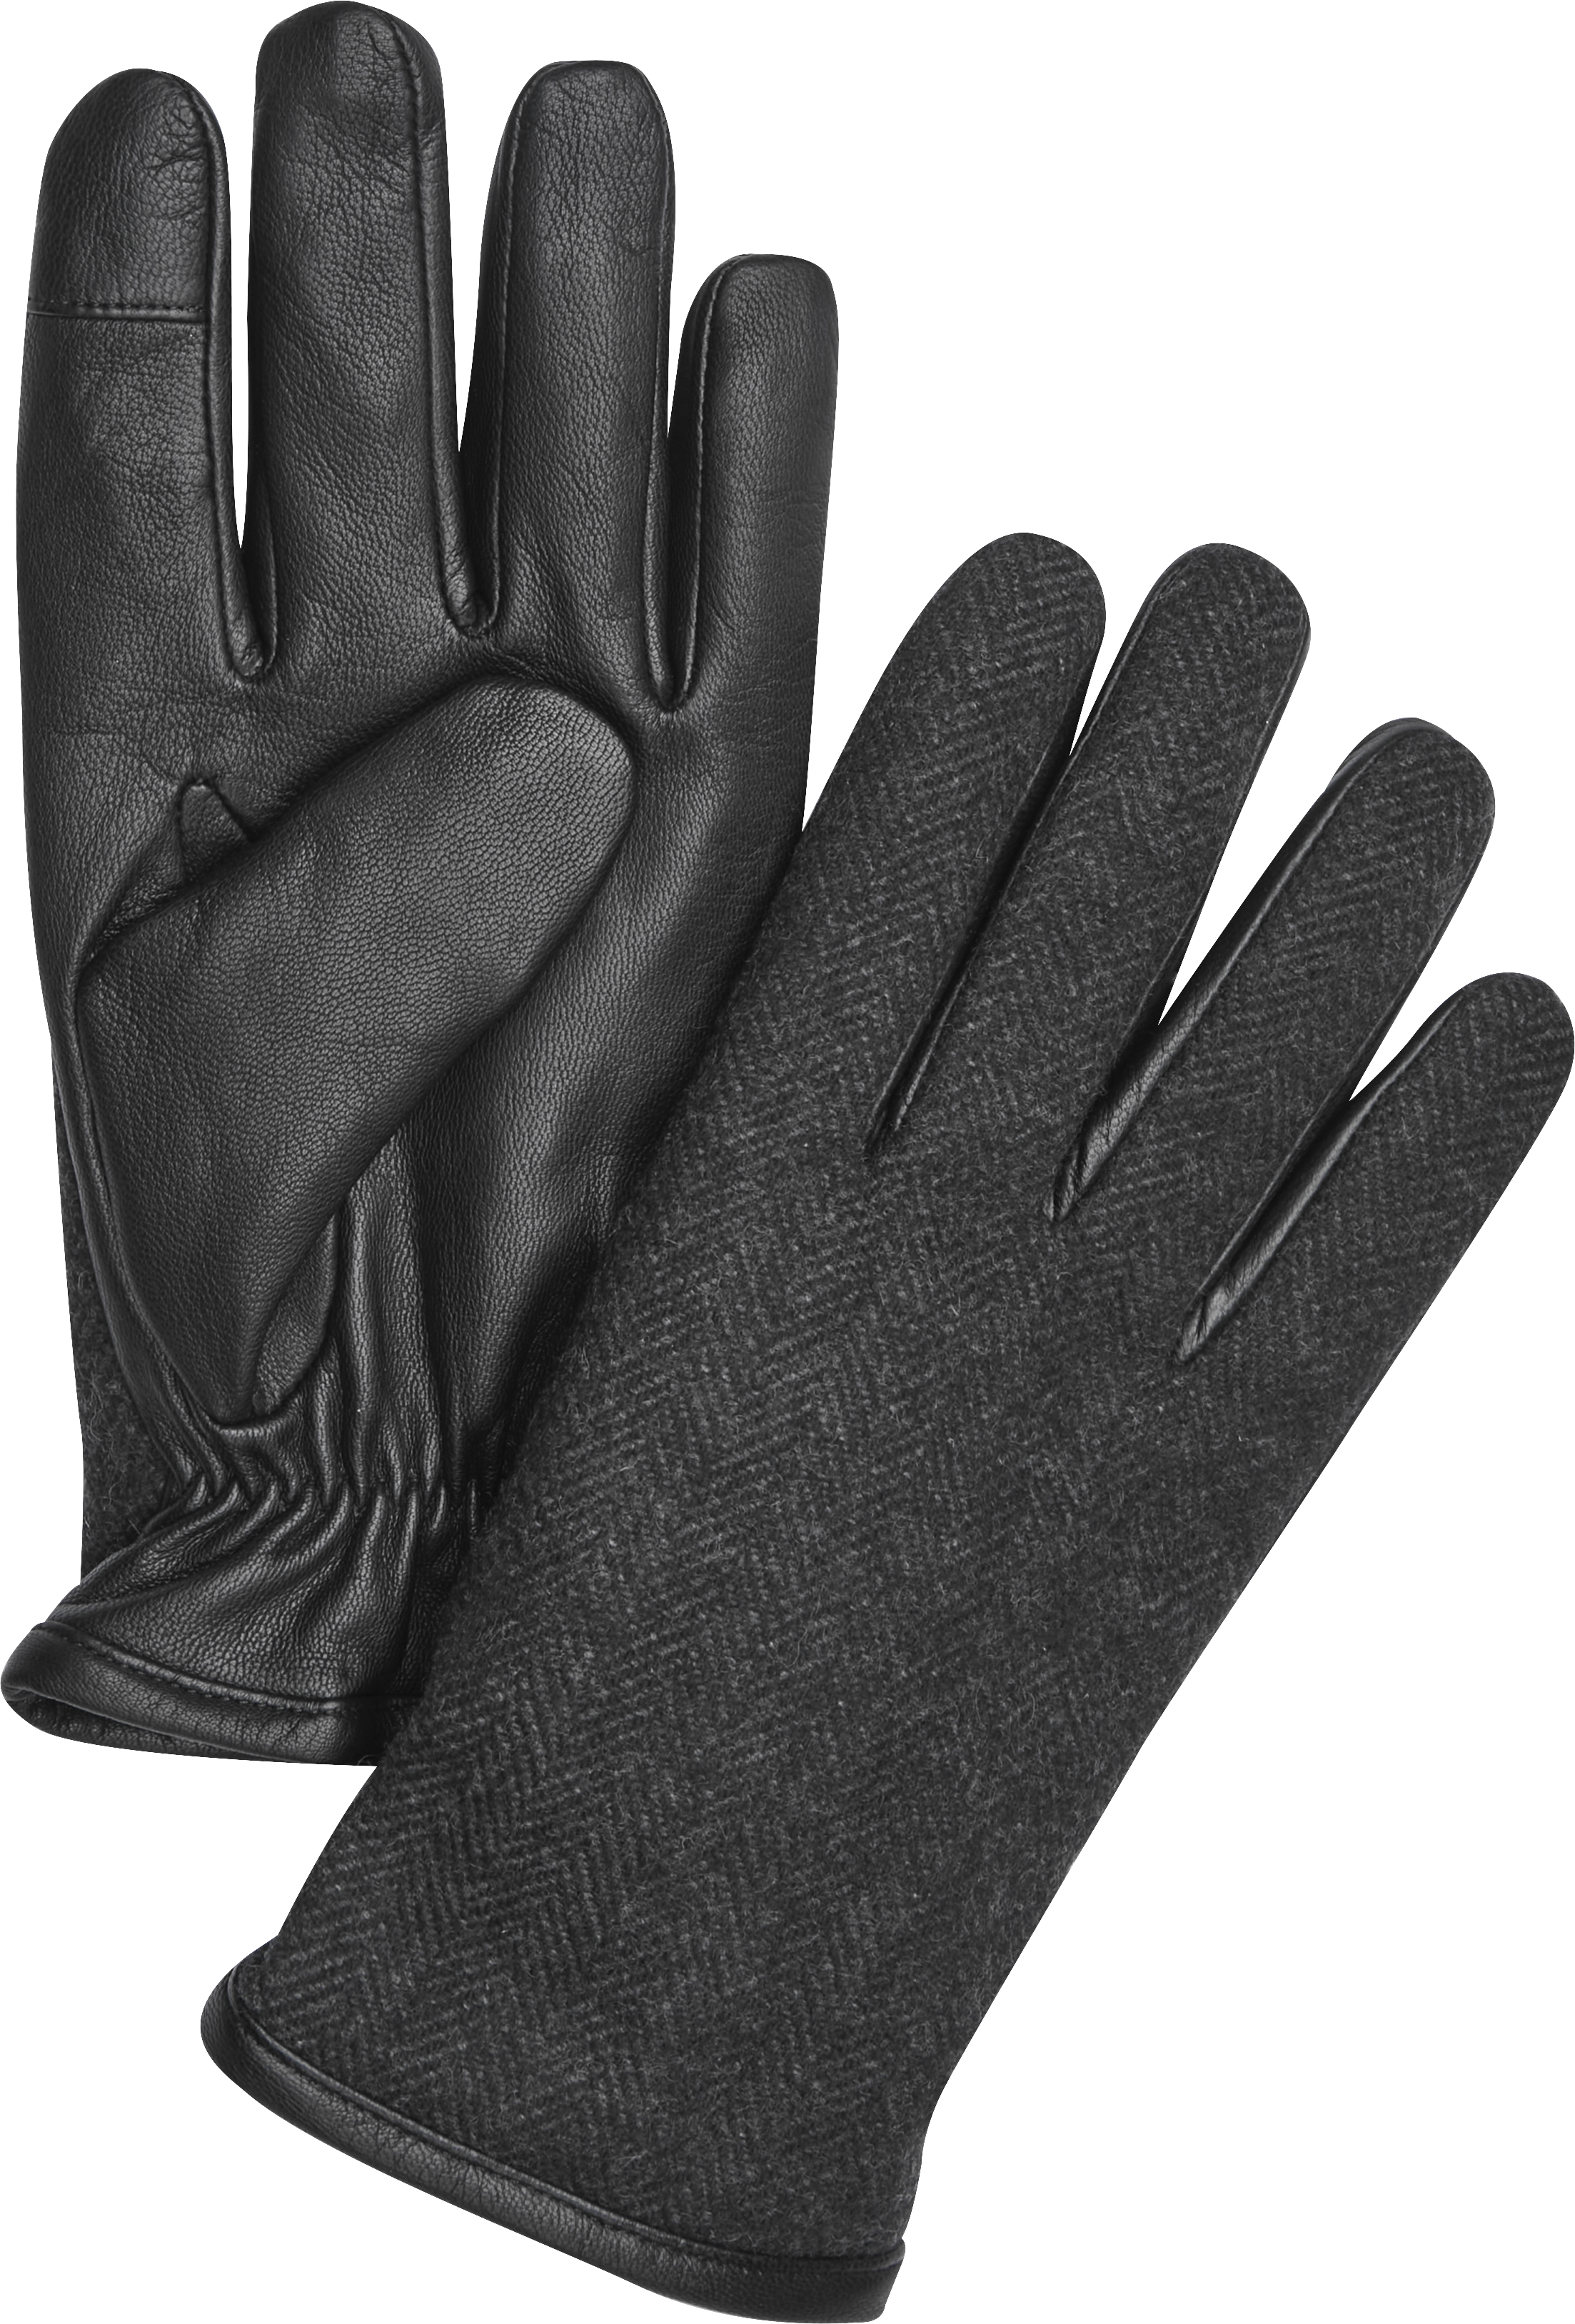 Pronto Uomo Herringbone Leather Gloves, Men's